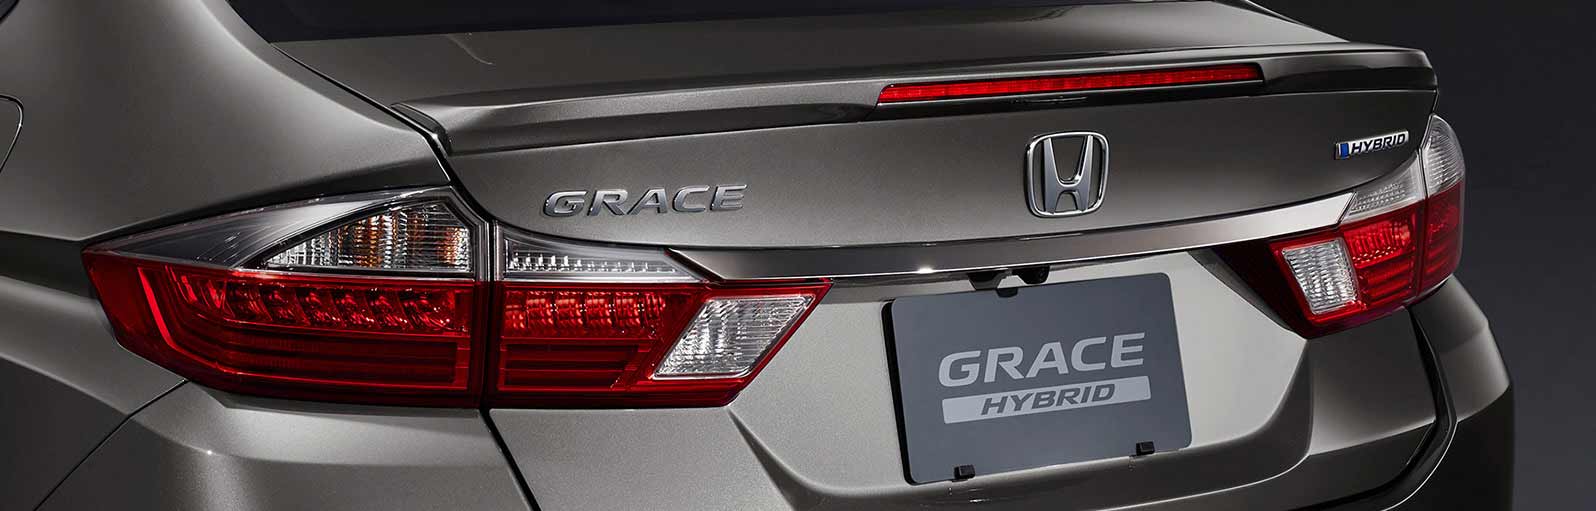 特別仕様車 グレイス 年7月終了モデル Honda公式サイト